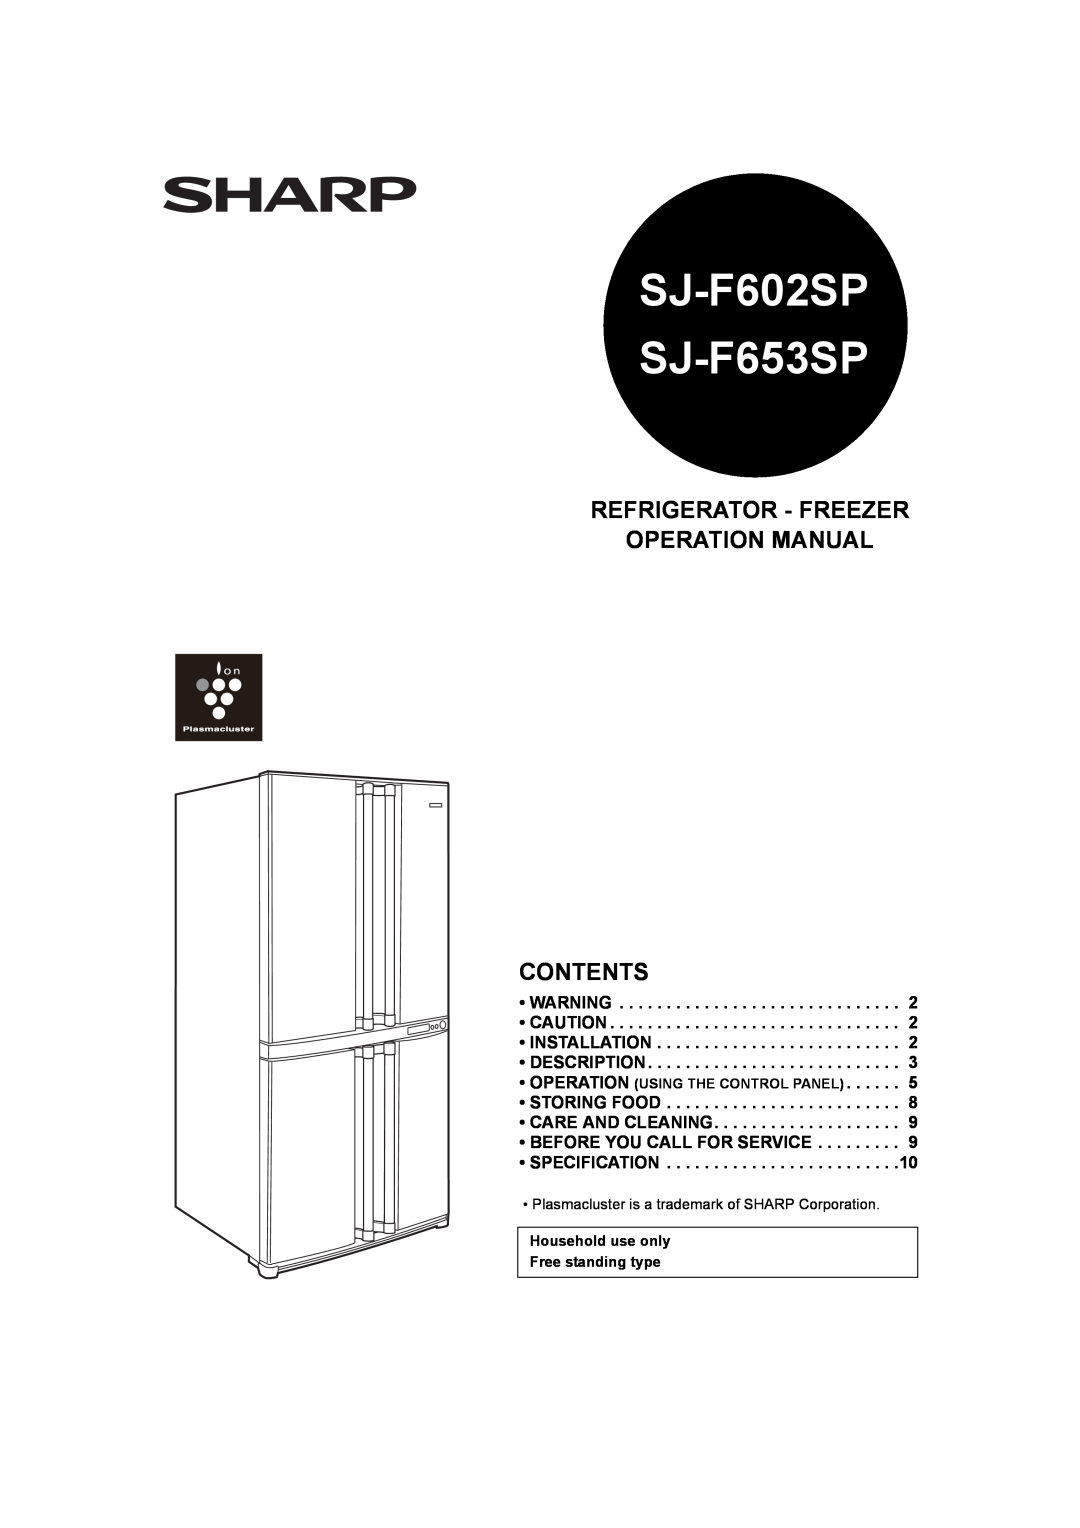 Sharp operation manual SJ-F602SP SJ-F653SP 